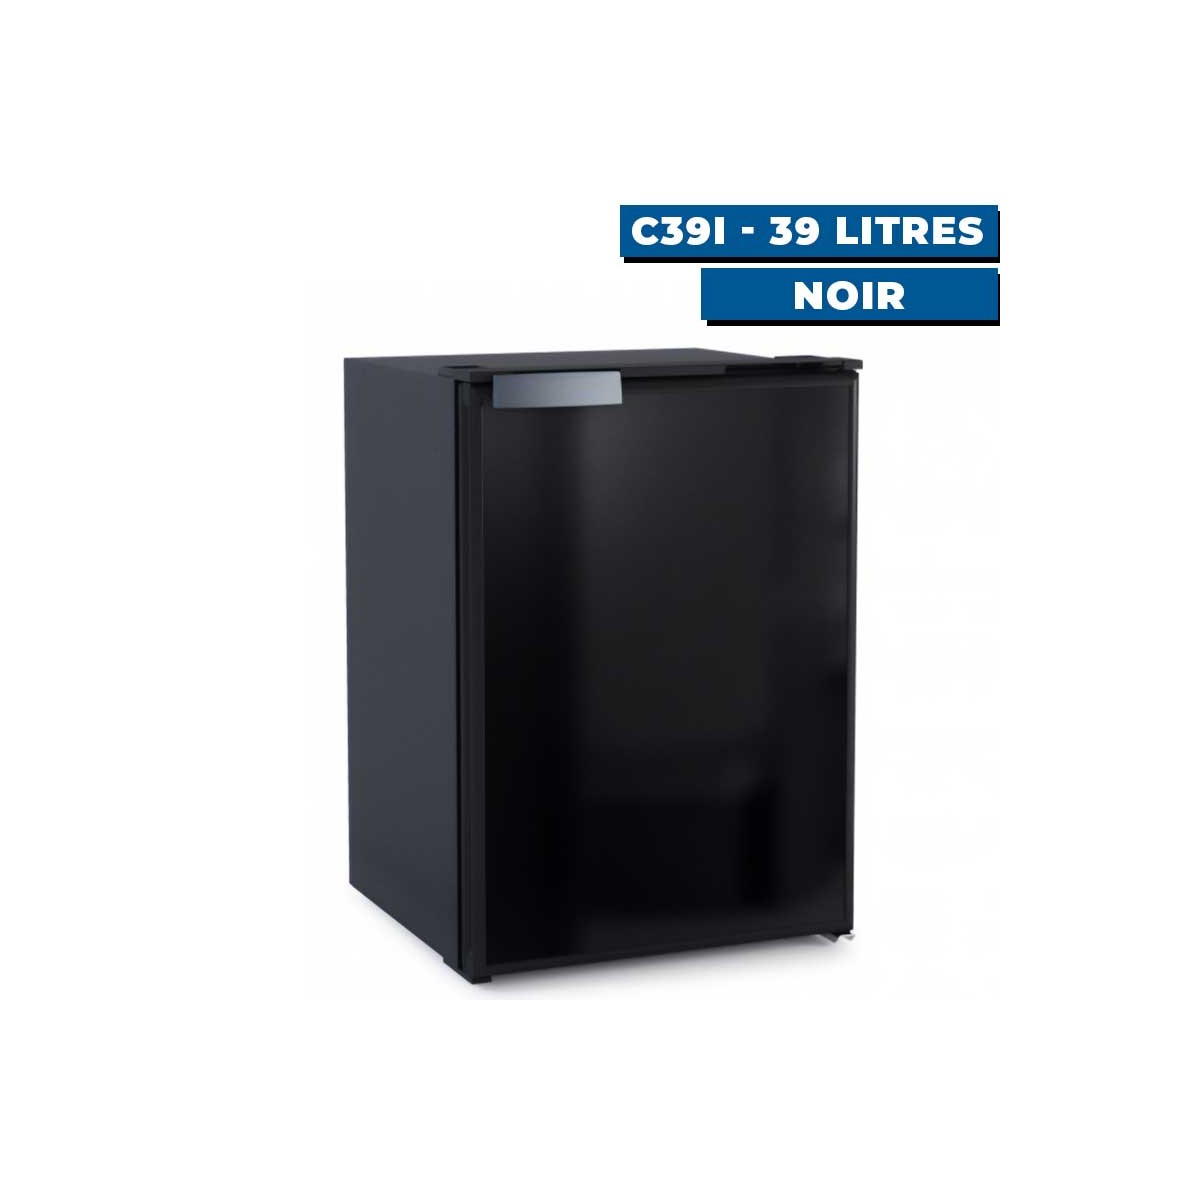 Réfrigérateur Vitrifrigo Seaclassic avec unité interne C39i - 39 Litres Noir